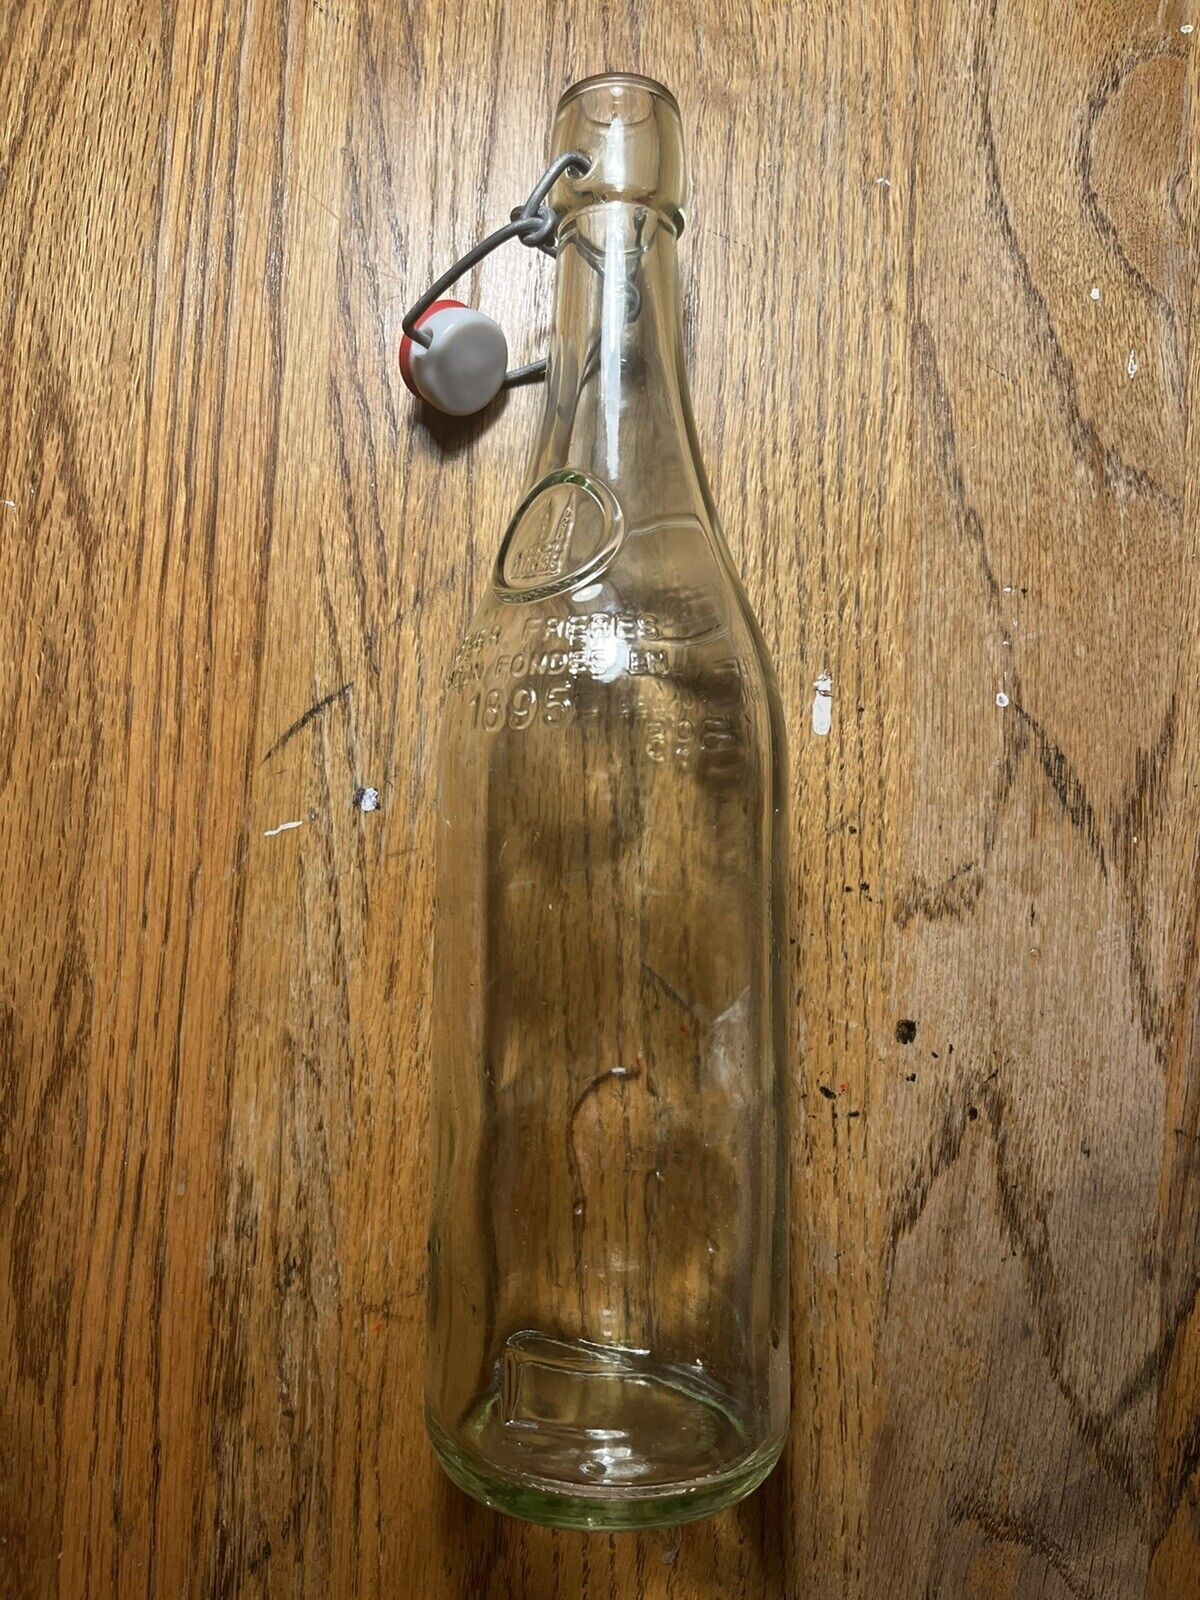 Geyer Freres Maison Fondee 1895 Glass Bottle w/ Wire Bale Stopper Swingtop 750mL